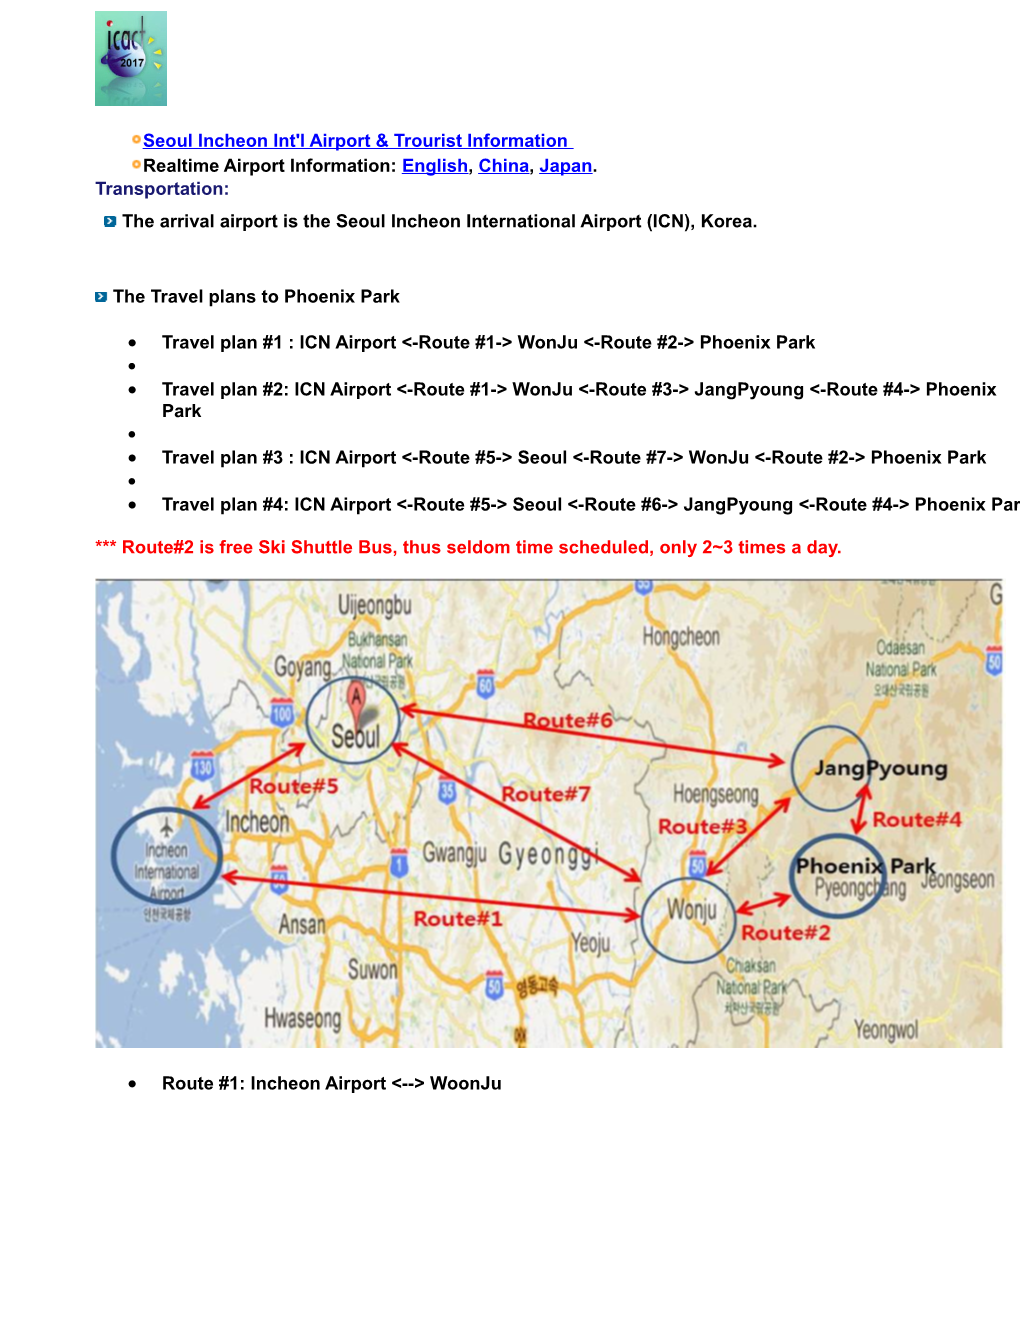 Travel Plan #1 : ICN Airport &lt;-Route #1-&gt; Wonju &lt;-Route #2-&gt; Phoenix Park